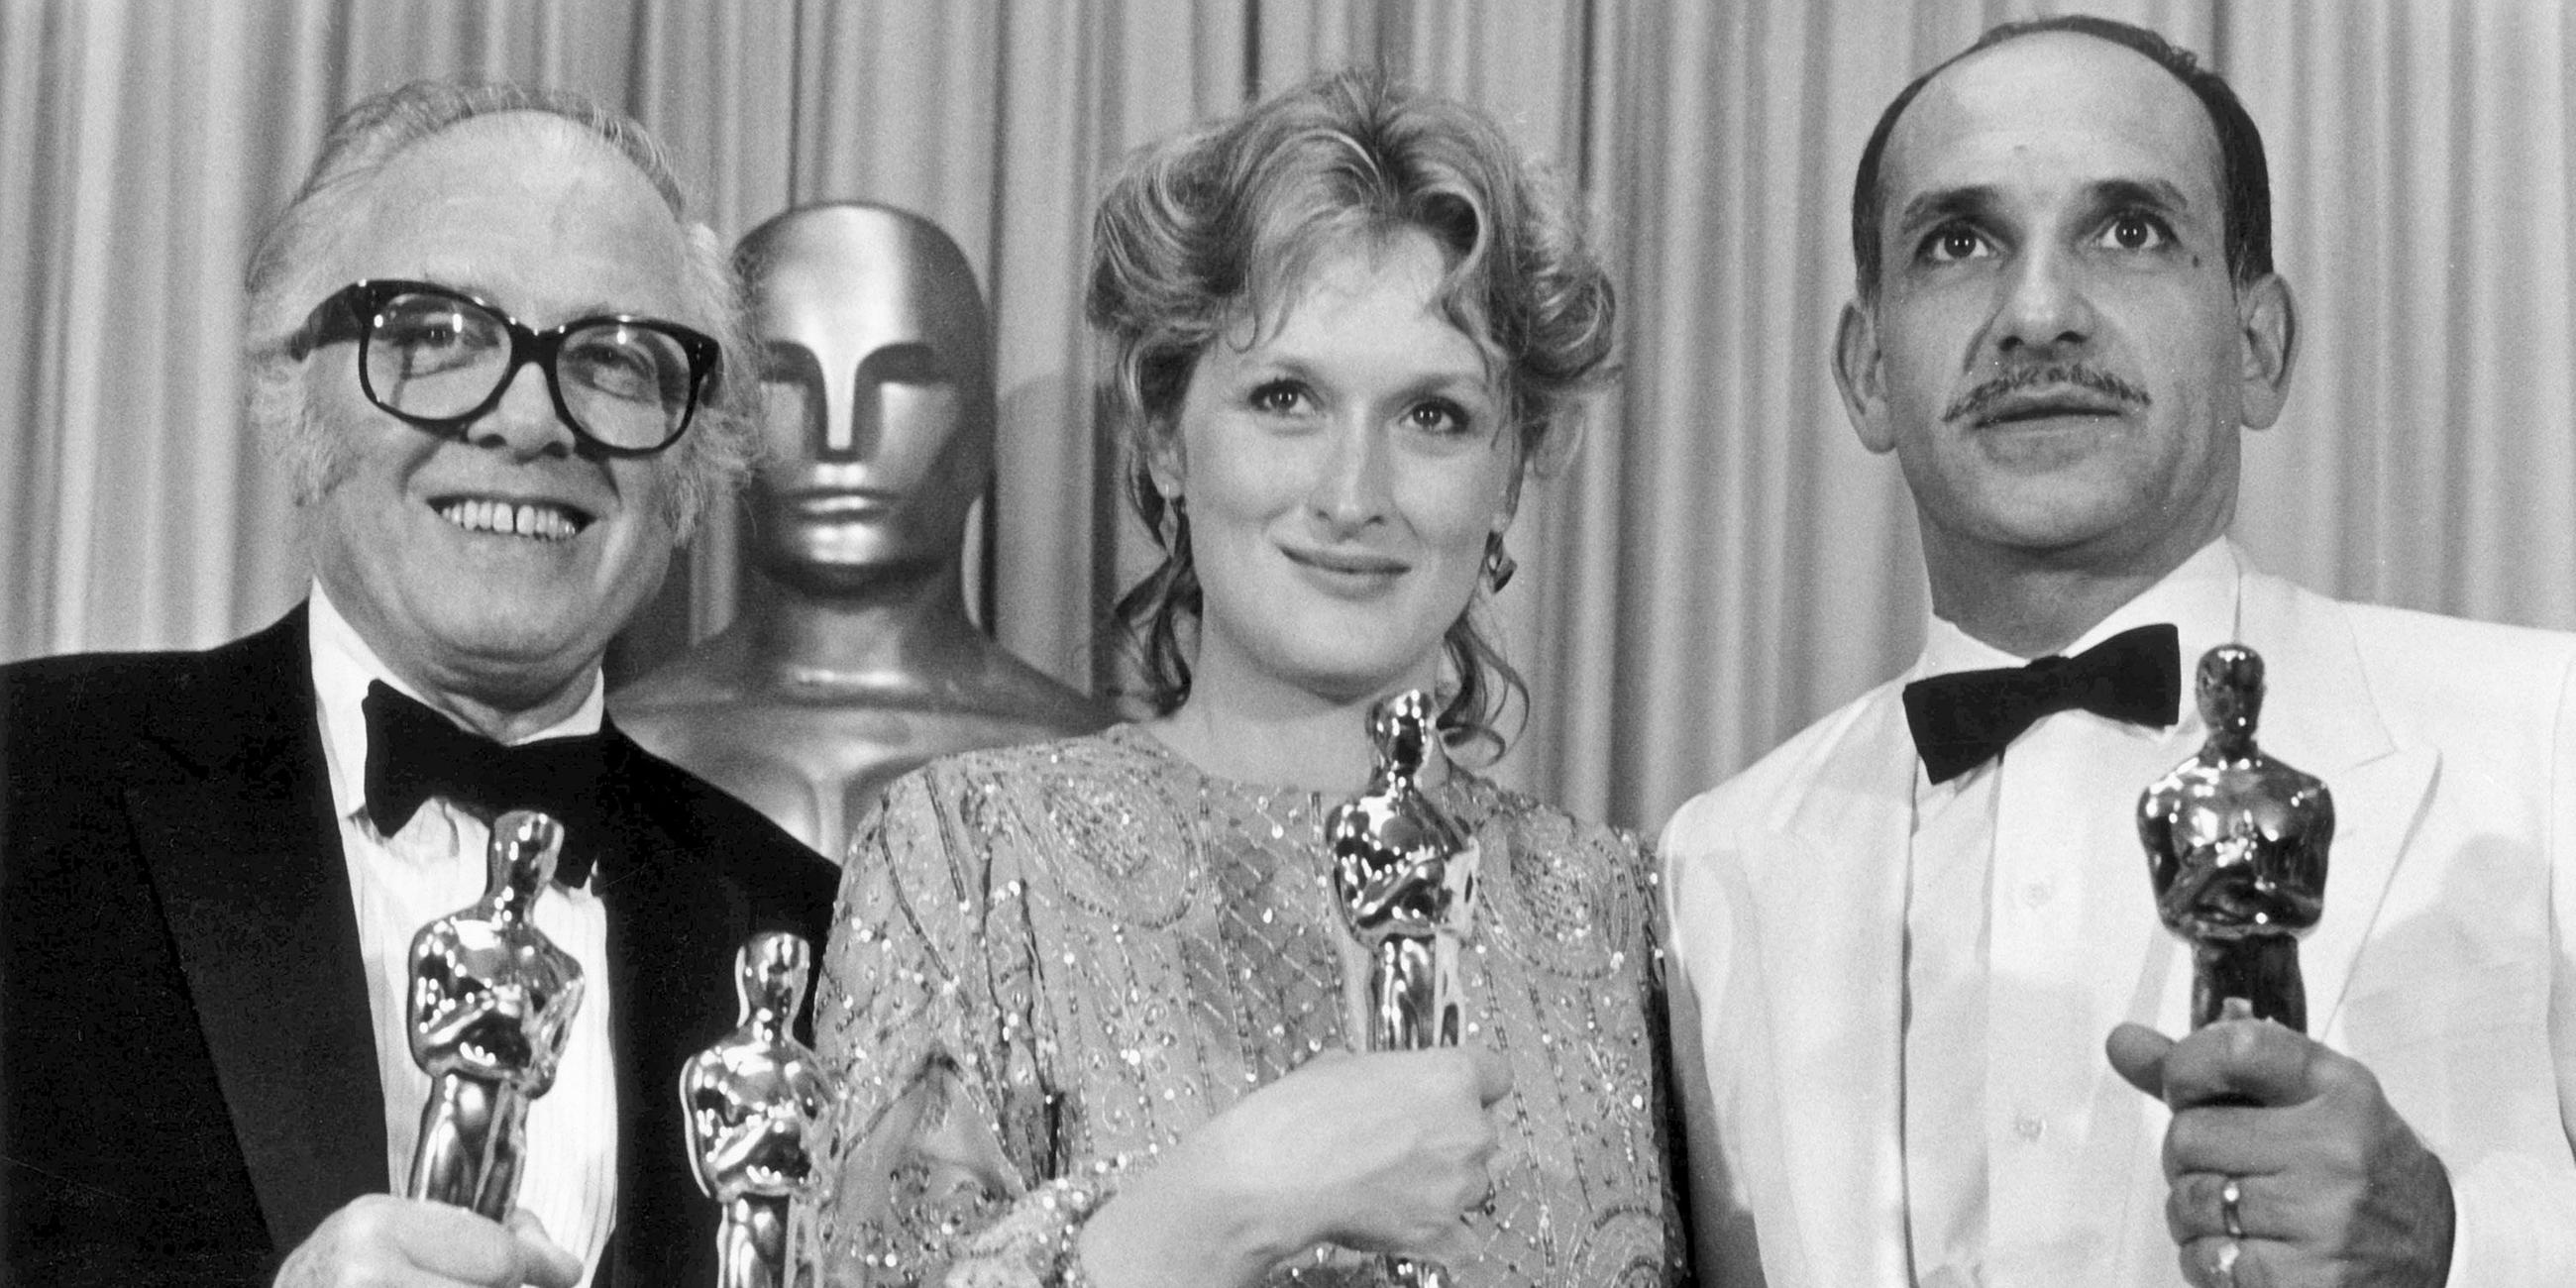 Archiv: Der Regisseur Richard Attenbourogh, die Schauspielerin Meryl Streep und der Schauspieler Ben Kingsley posieren mit ihren Oscars am 11.04.1983 bei der 55. Preisverleihung der Filmkunstakademie in Hollywood.